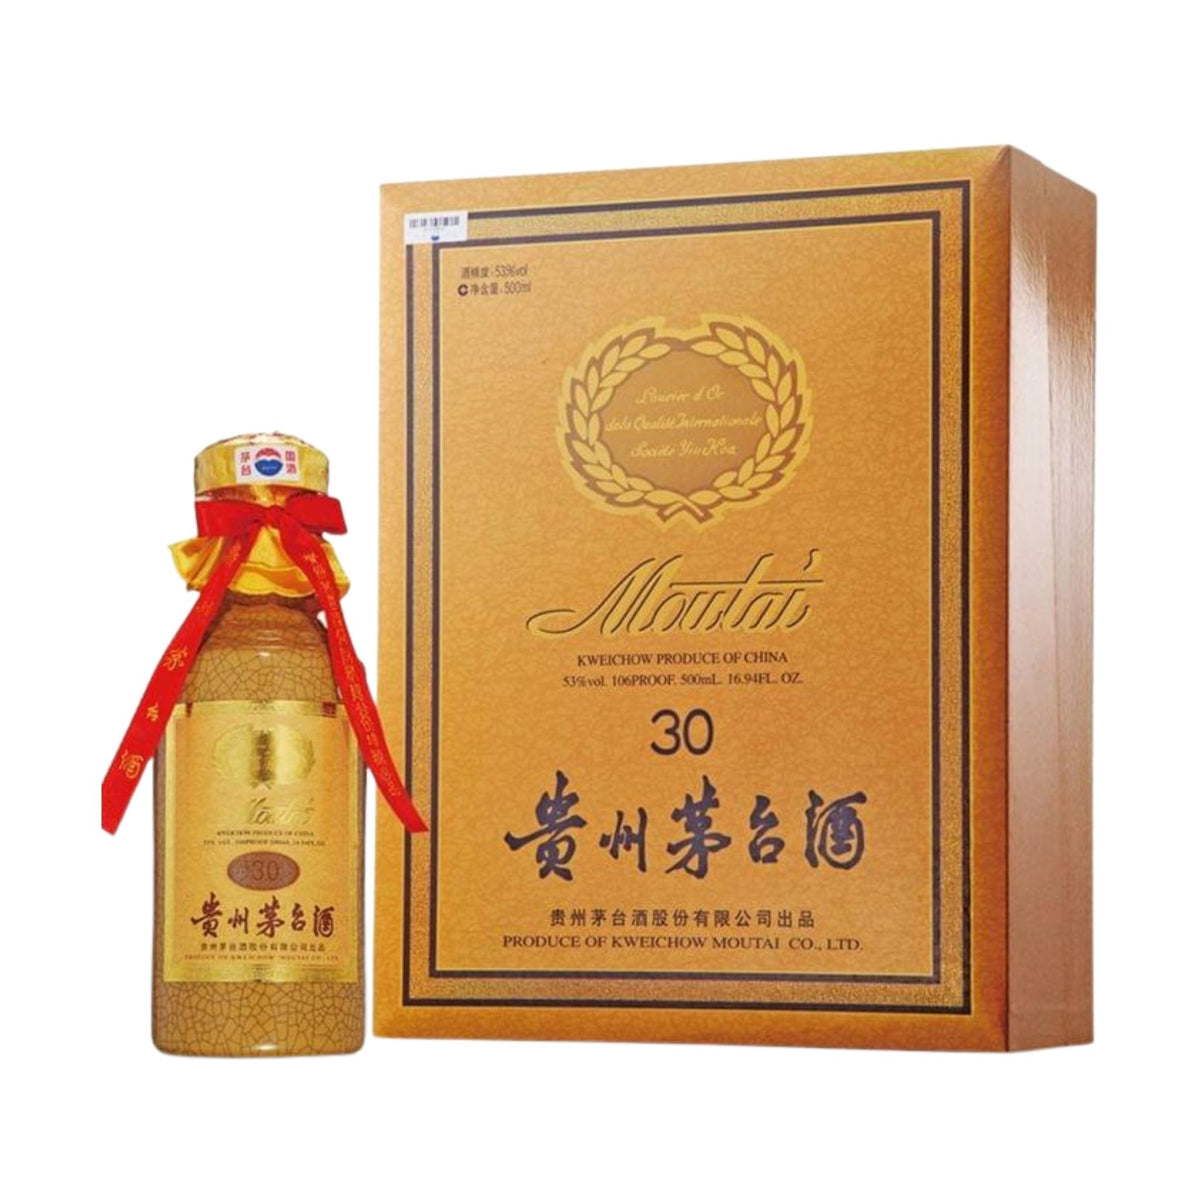 貴州茅台酒30年53度- Moutai 30 Years, Kweichow, China (375ml 